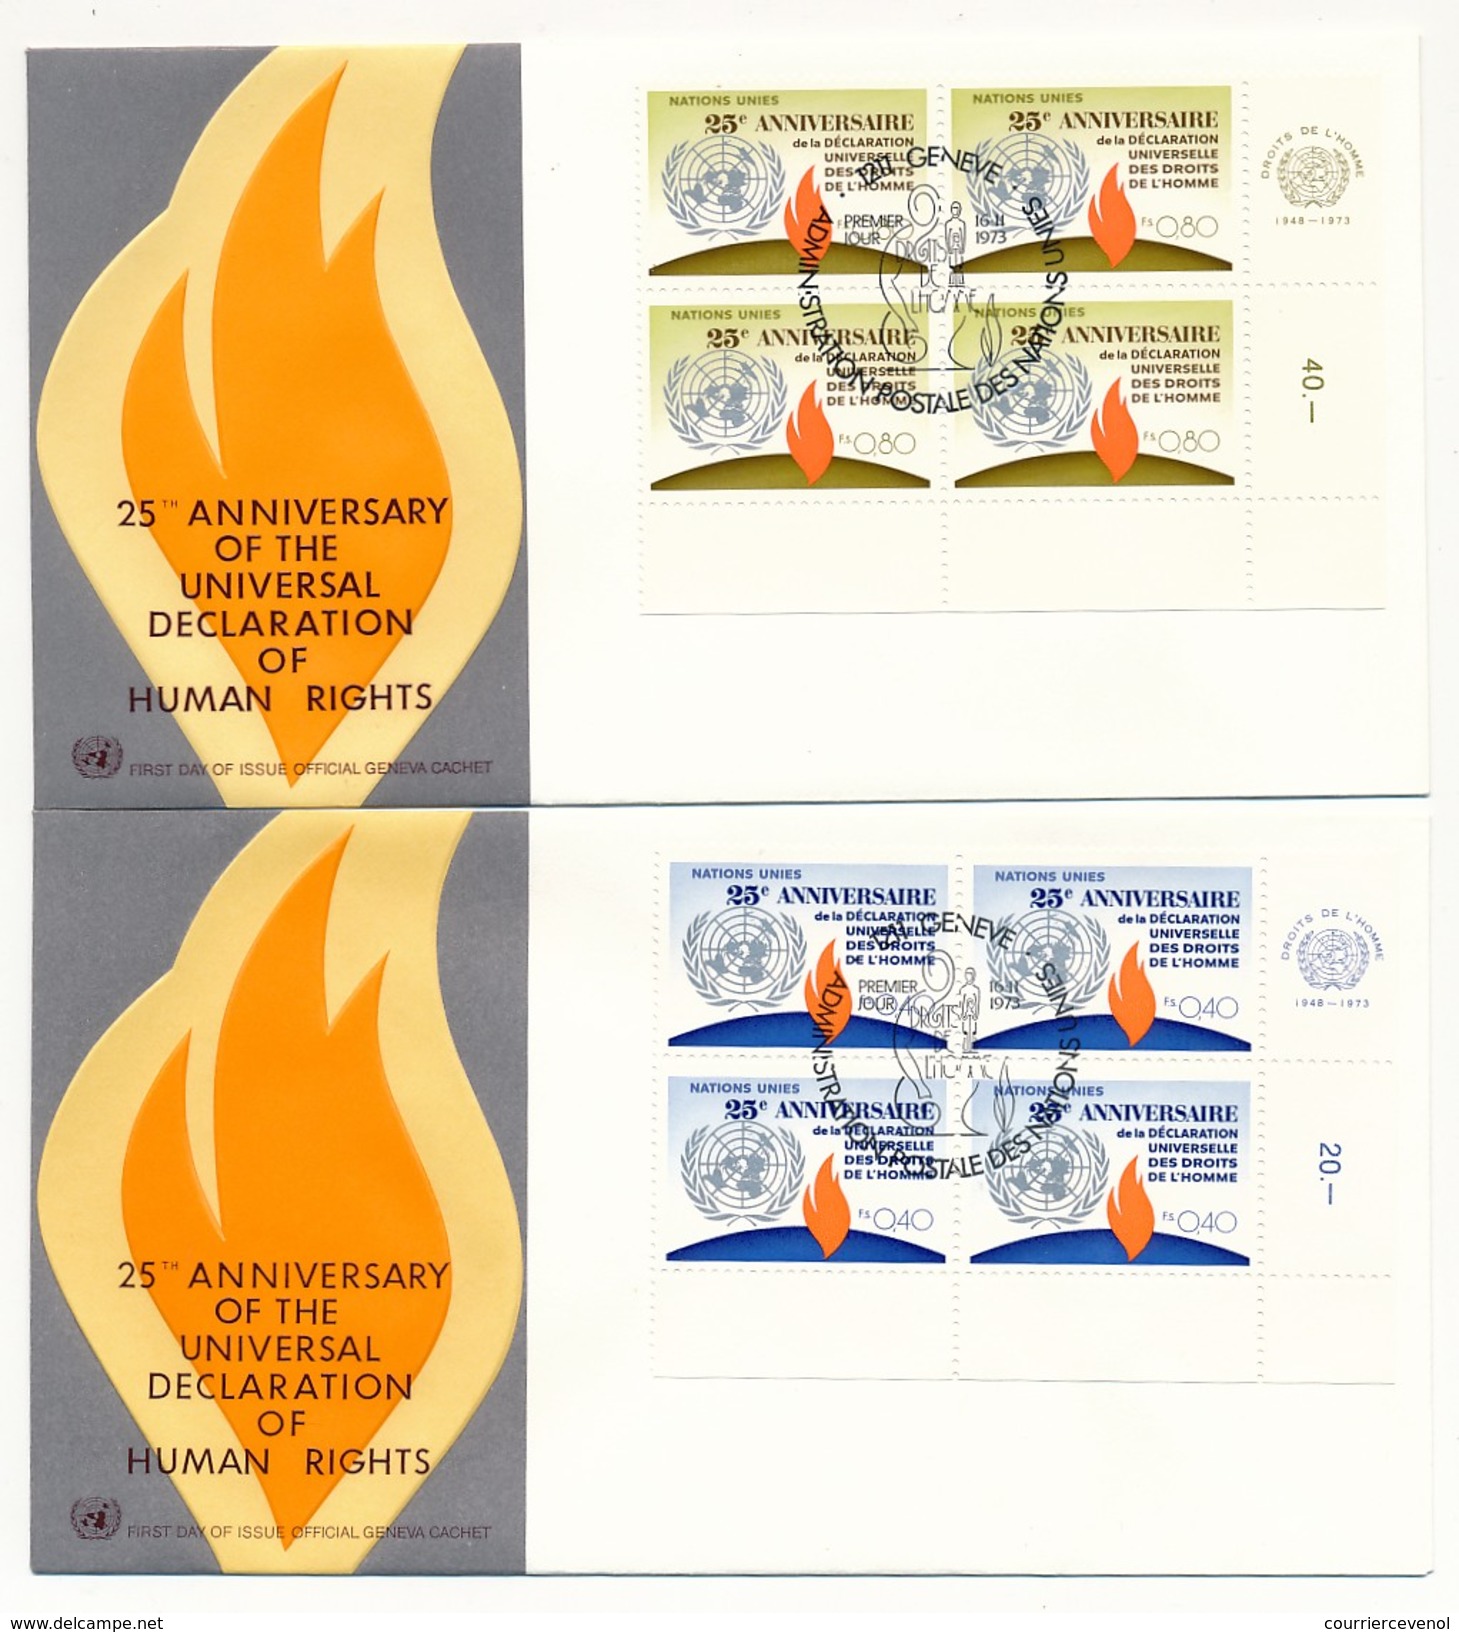 NATIONS UNIES - 10 Enveloppes FDC - 25eme Anniversaire Déclaration Des Droits De L'Homme - New York - Genève - 1973 - ONU